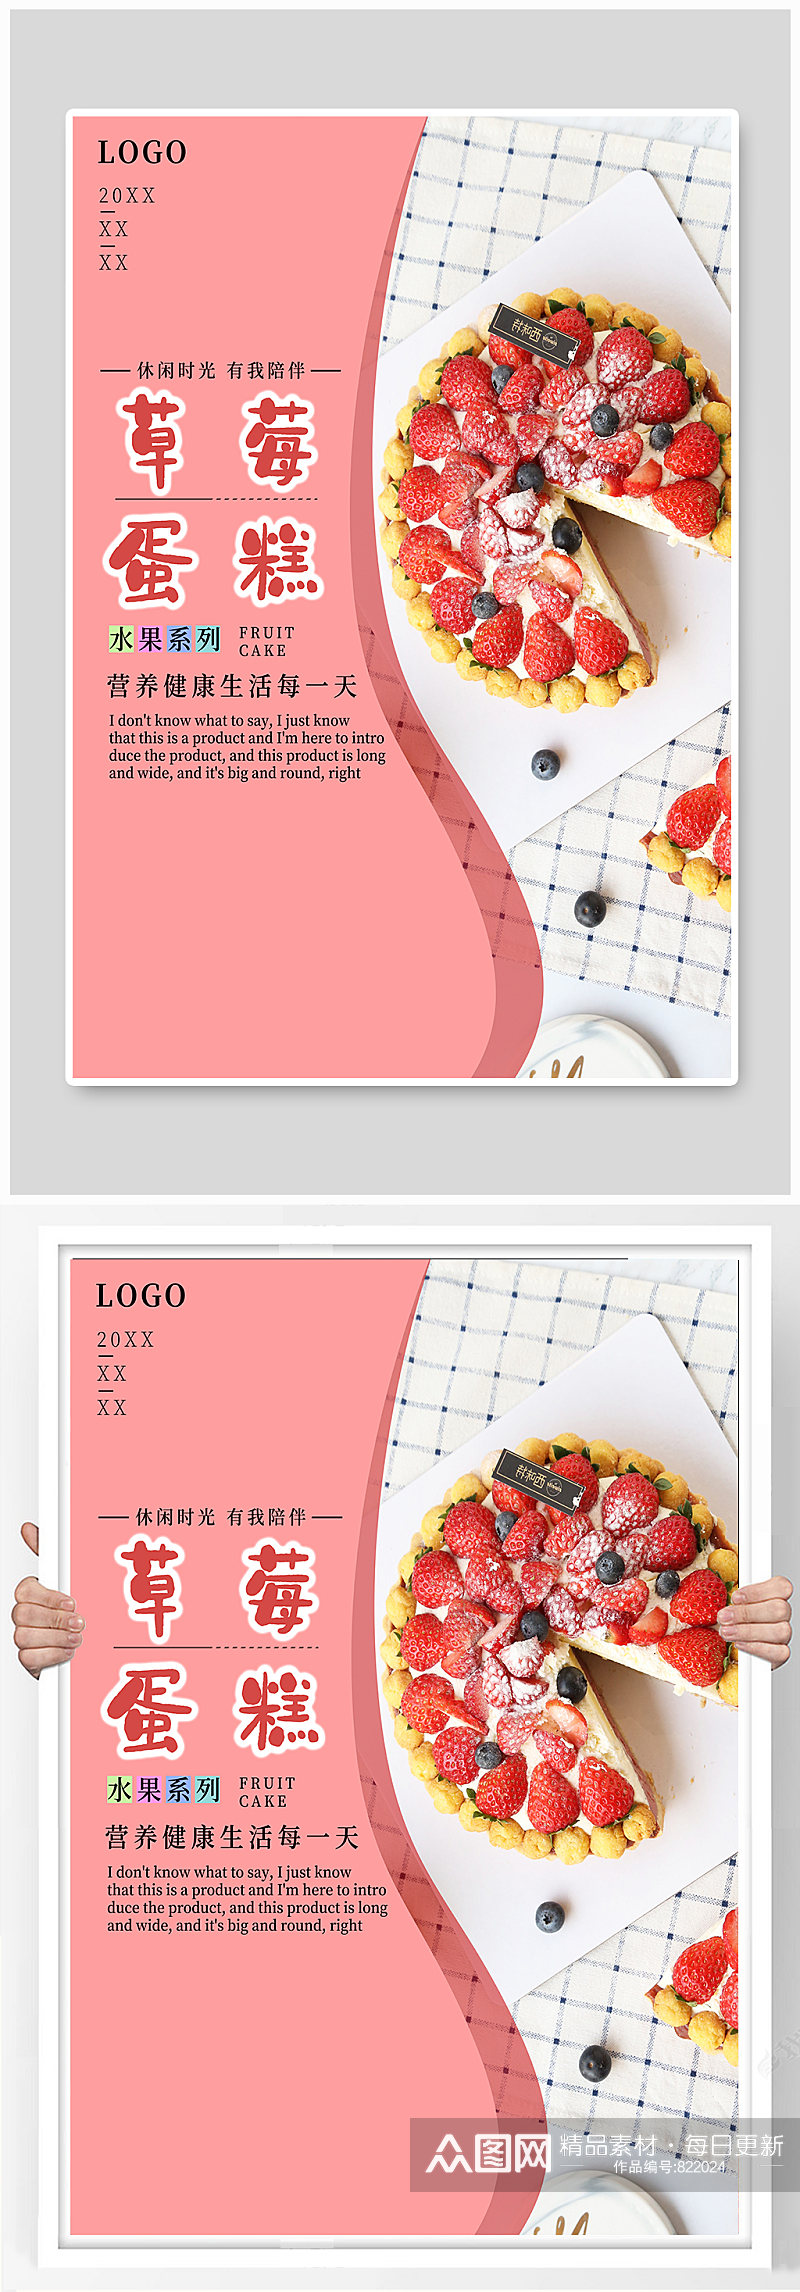 创意草莓蛋糕水果蛋糕美食甜点海报素材